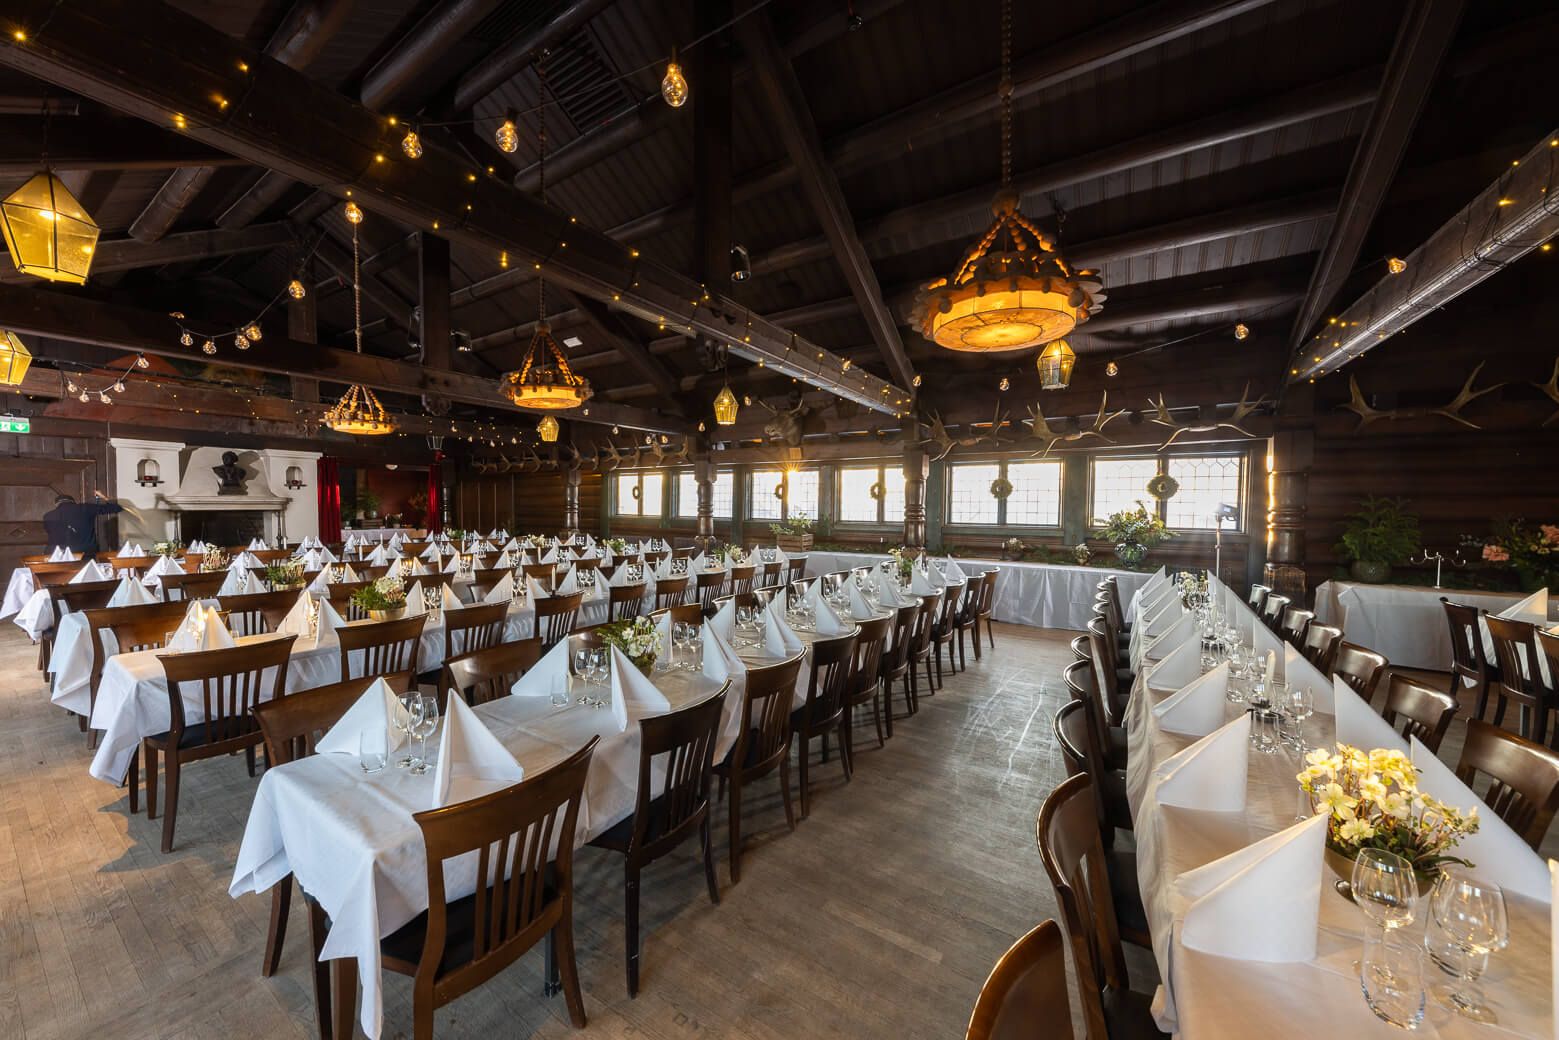 Högloftet tillhör Skansens restauranger och är en perfekt festlokal för bröllopet i Stockholm